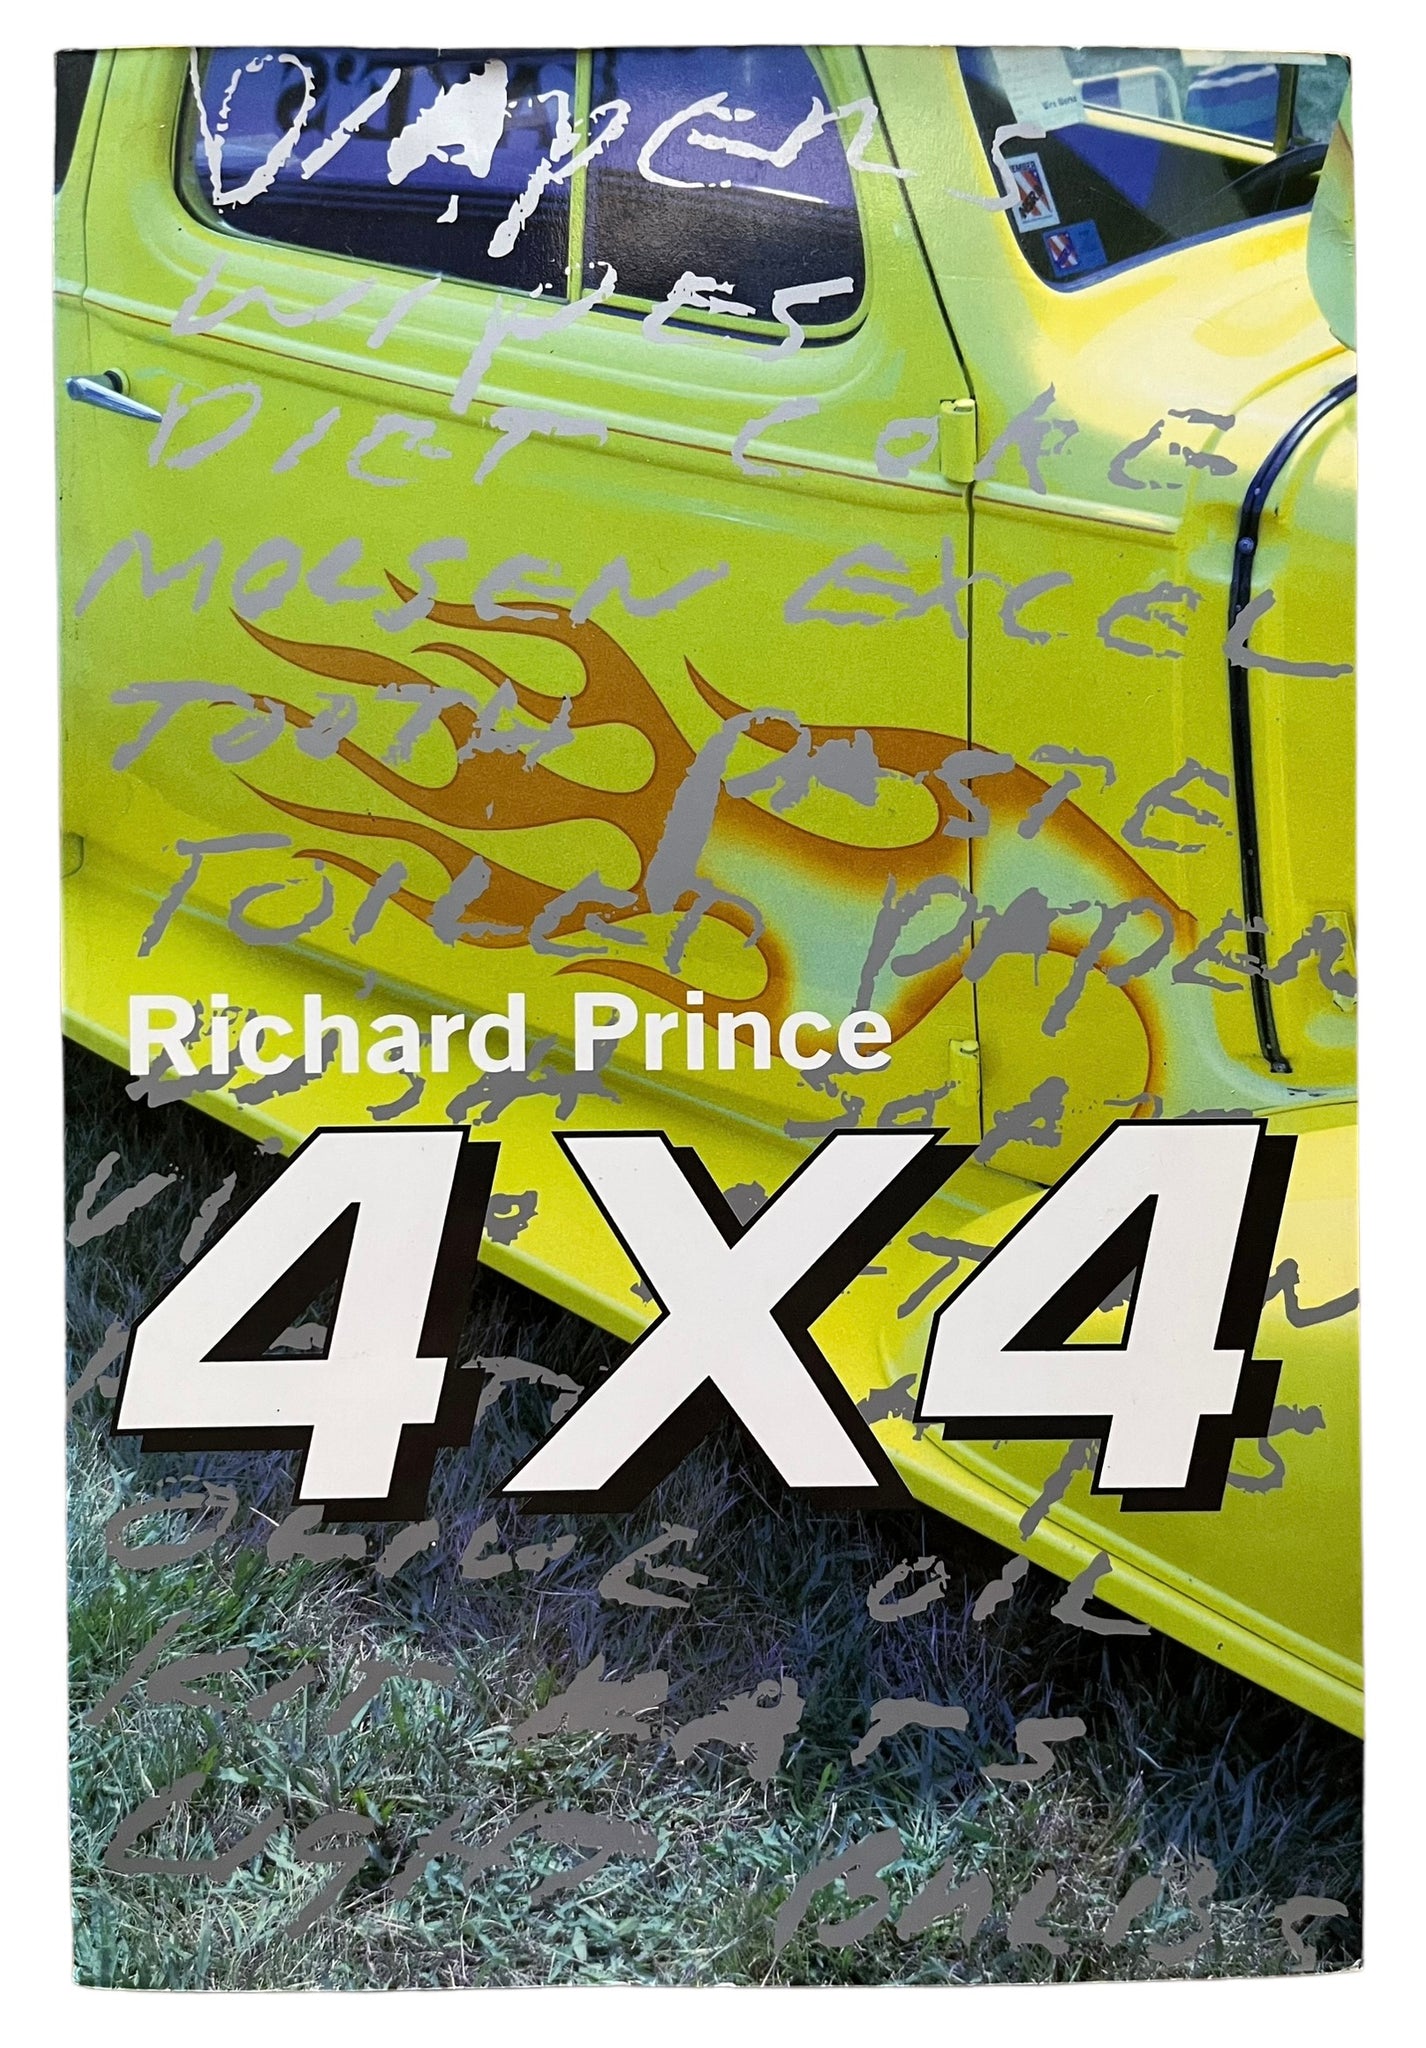 Richard Prince 4 x 4